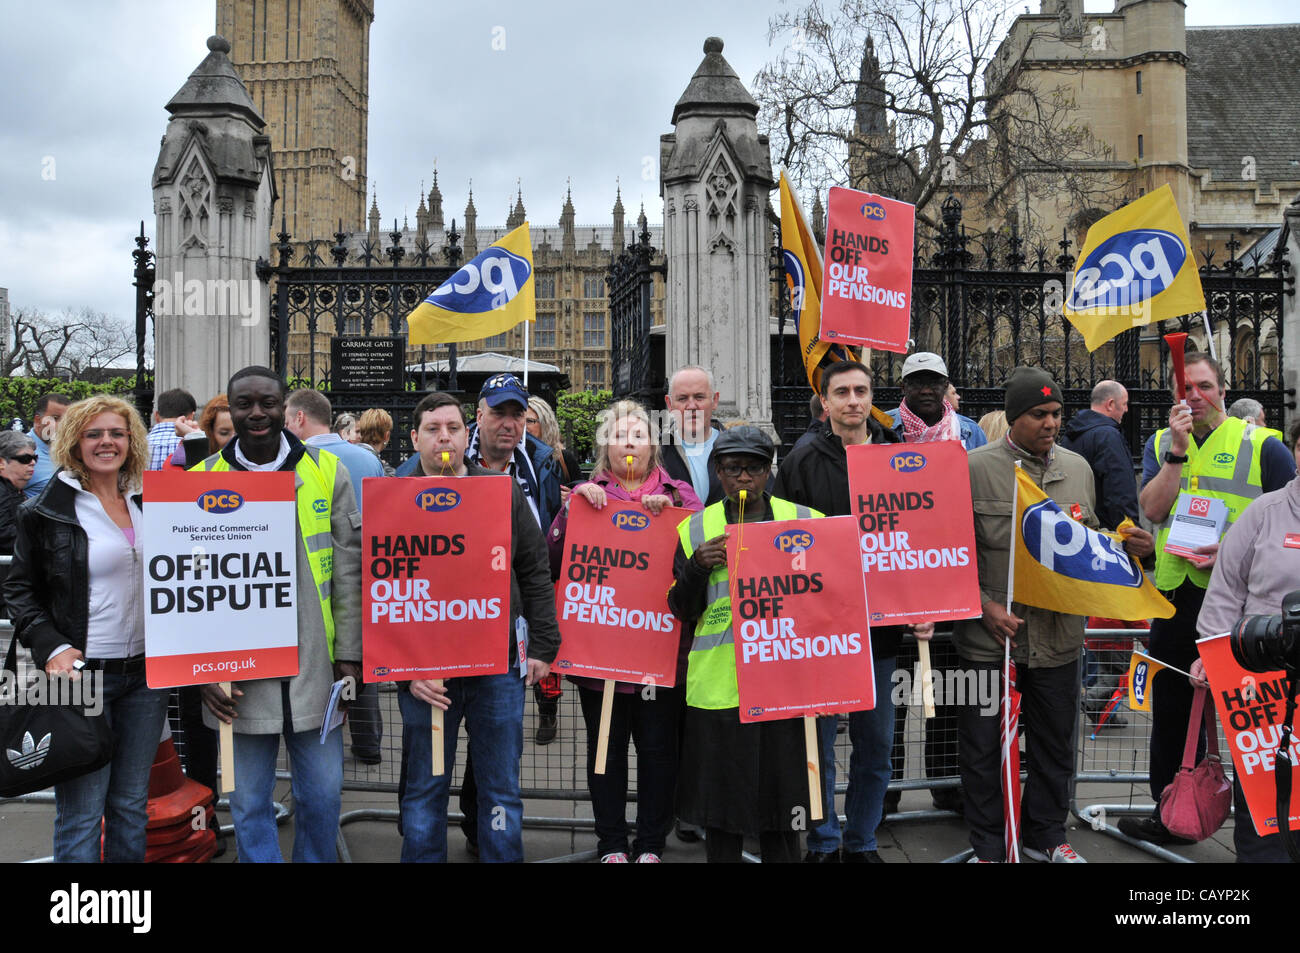 PCS Gewerkschaftsmitglieder streiken über Rentenreformen außerhalb der Houses of Parliament, London, UK. Donnerstag, 10. Mai 2012 Stockfoto